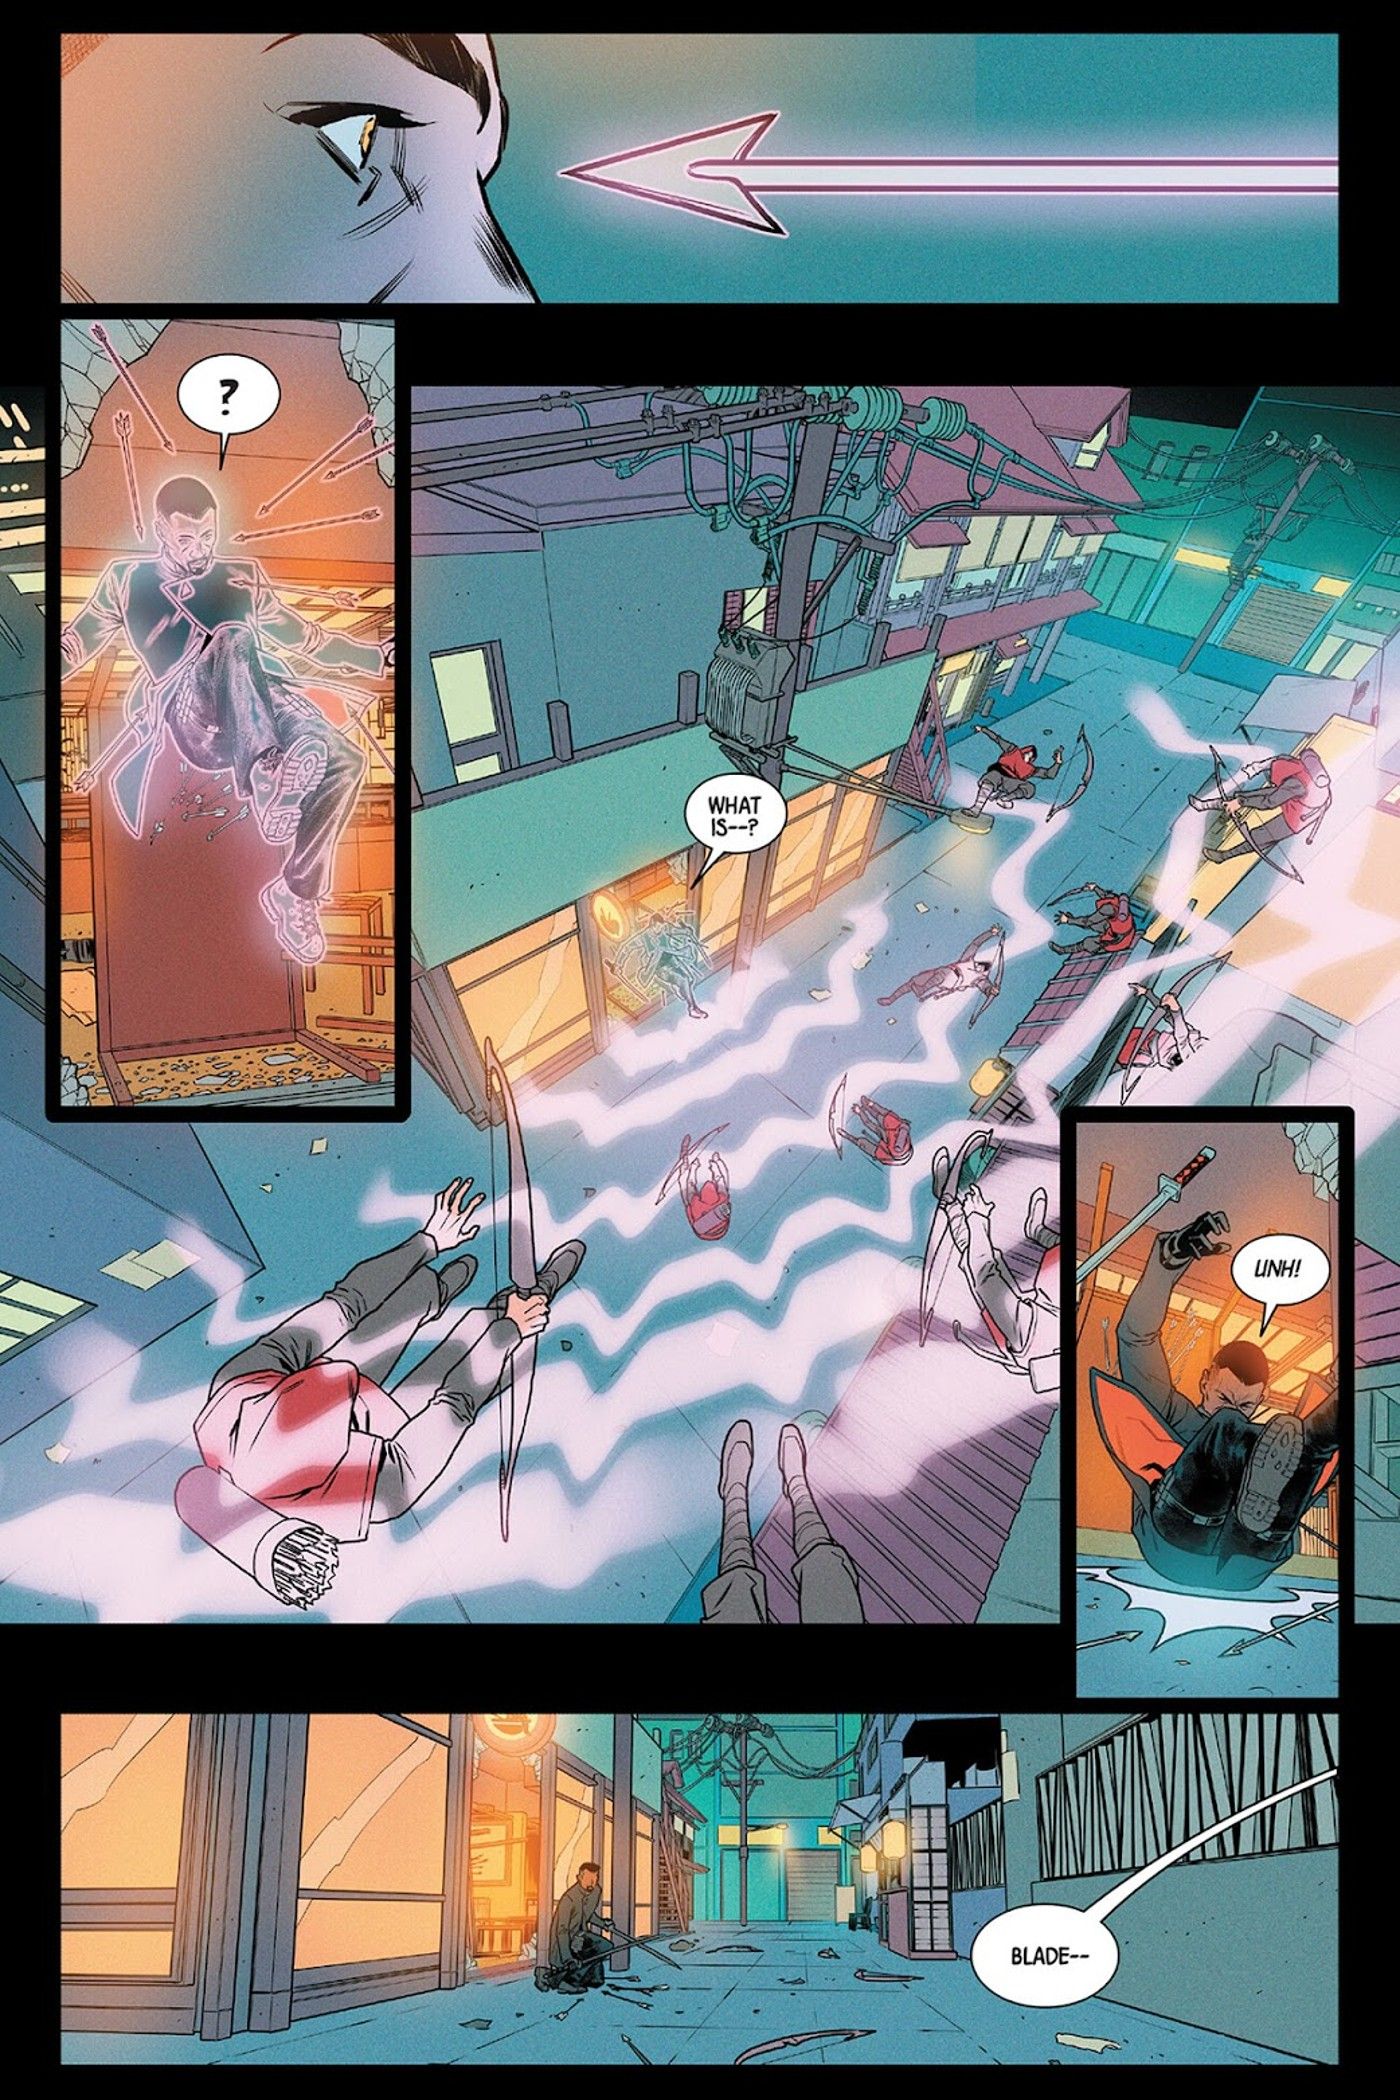 Blade #3'ten Doctor Strange'in Blade'i son anda kurtarışını gösteren sayfa